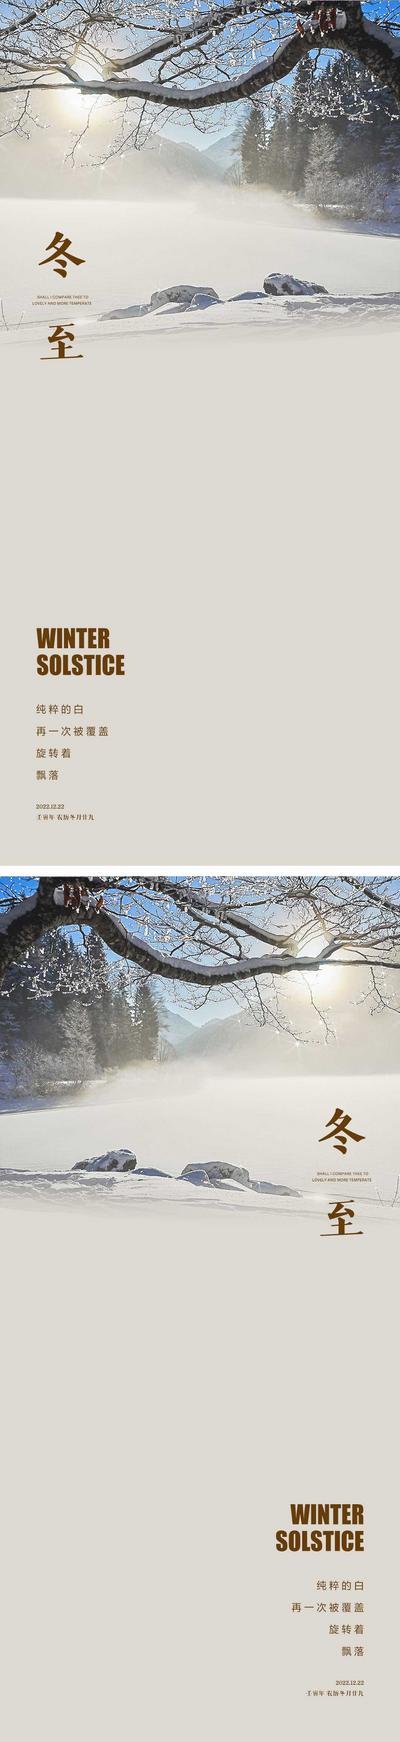 南门网 海报 二十四节气 冬至 饺子 雪景 简约